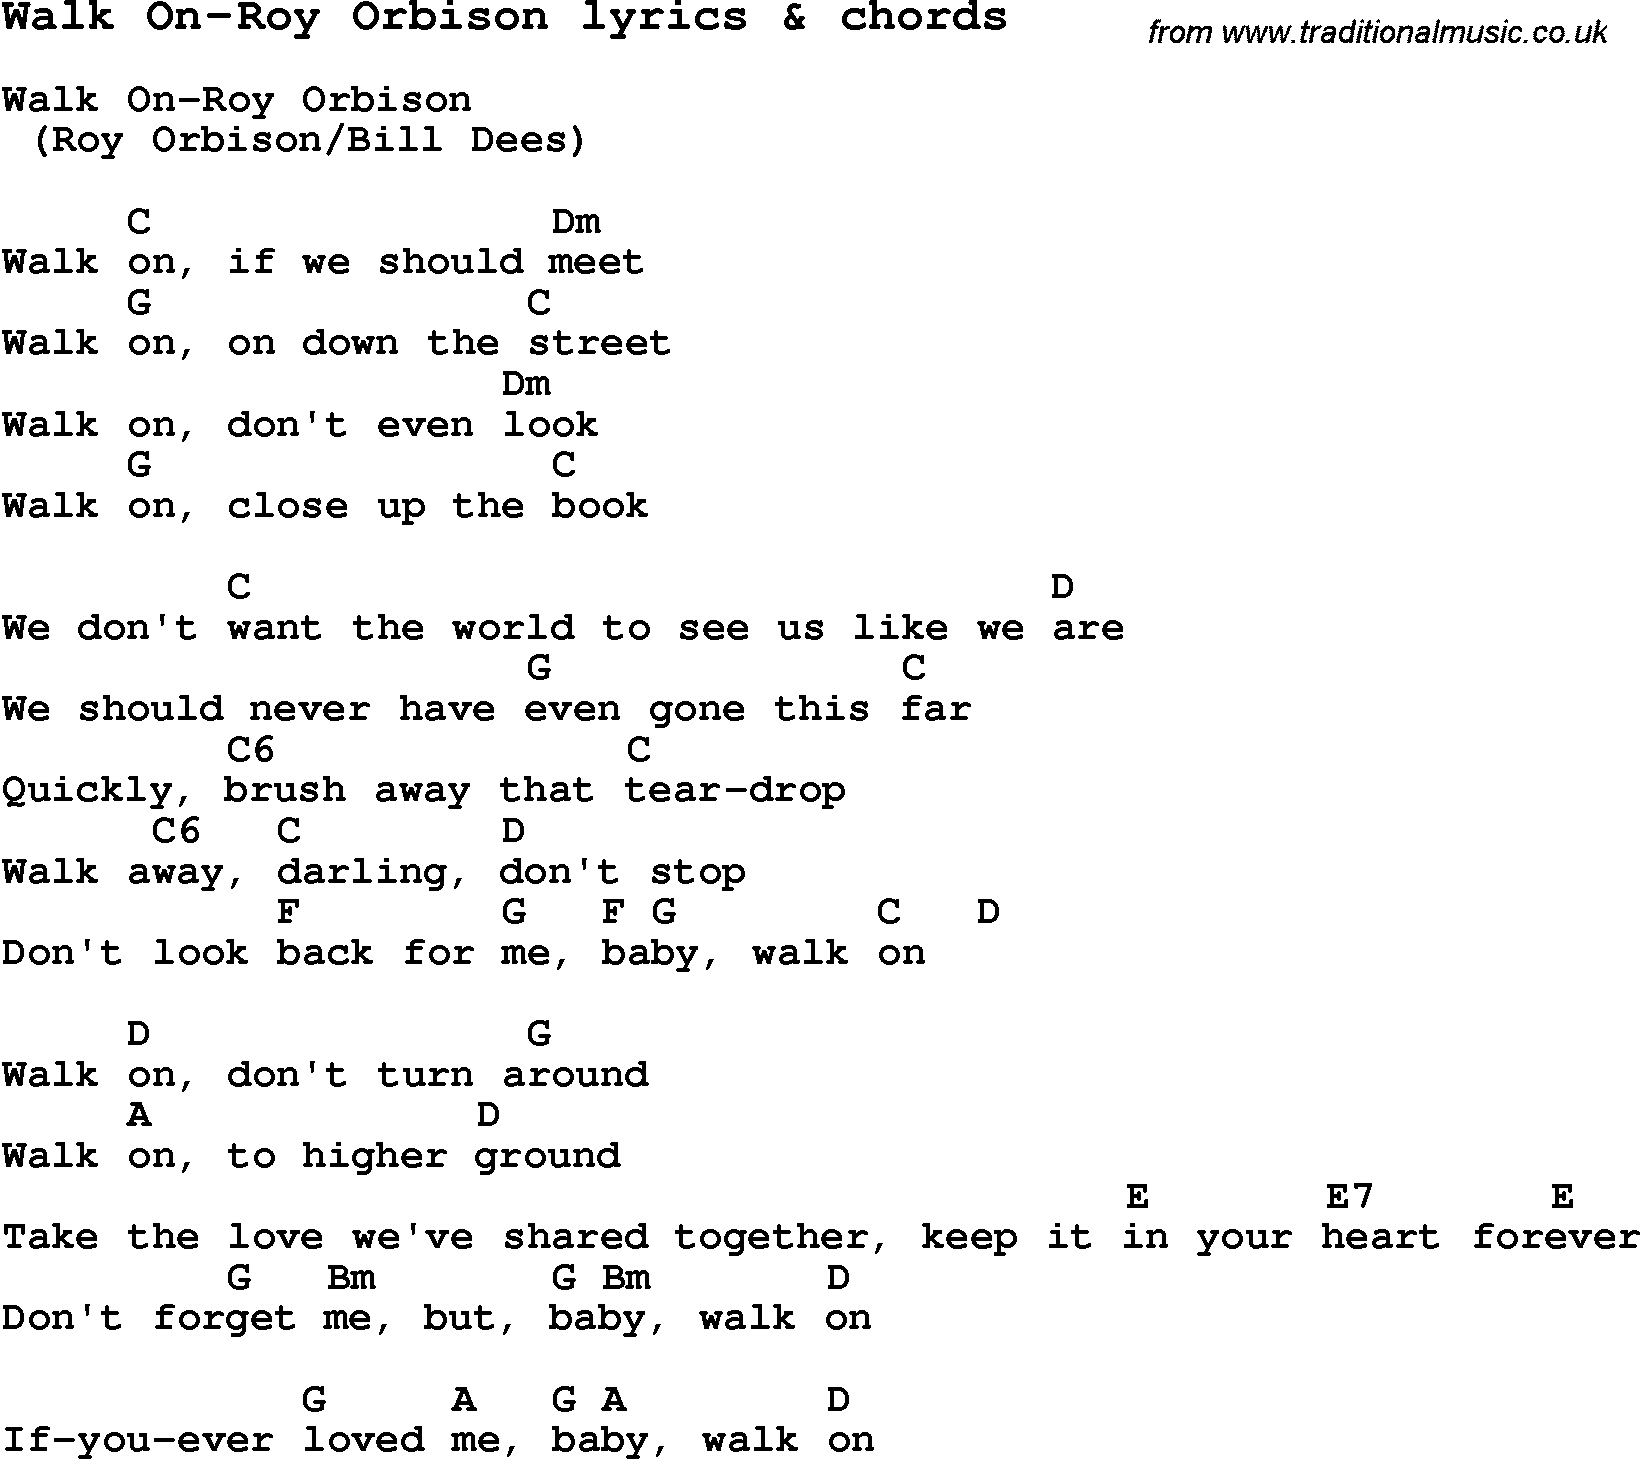 Love Song Lyrics for: Walk On-Roy Orbison with chords for Ukulele, Guitar Banjo etc.